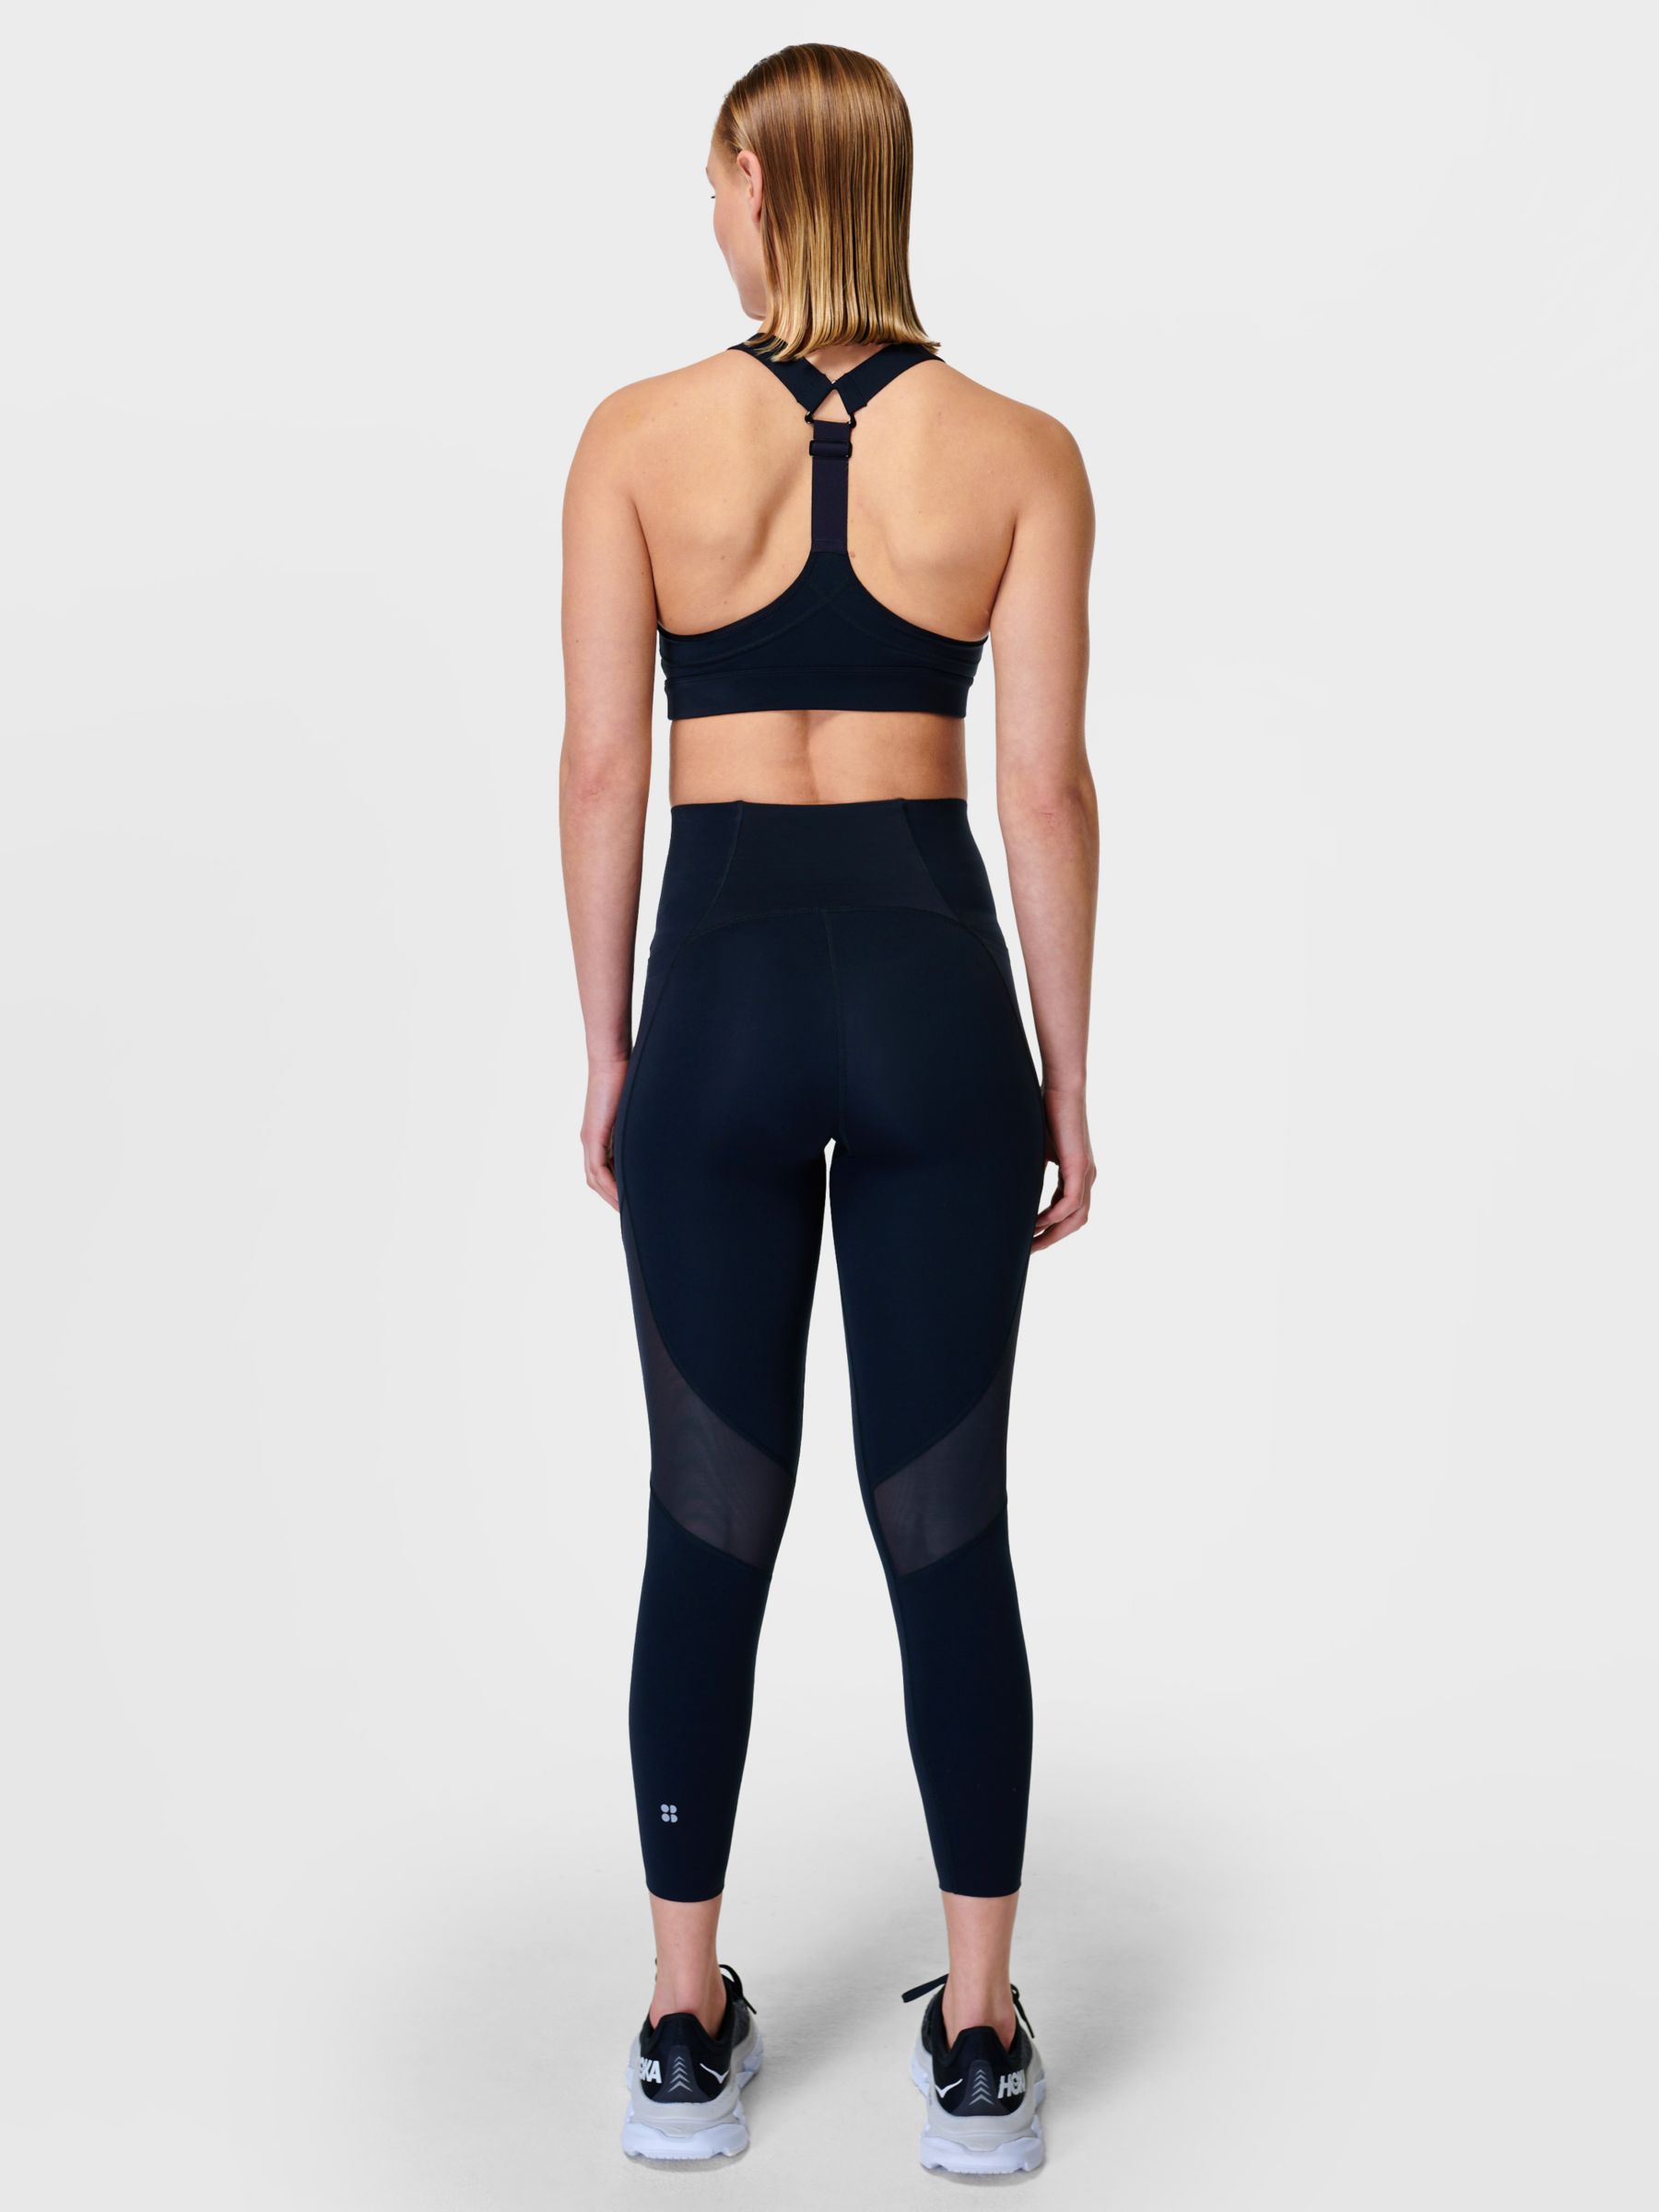 Sweaty Betty Black Sports Bra Size XL - 70% off